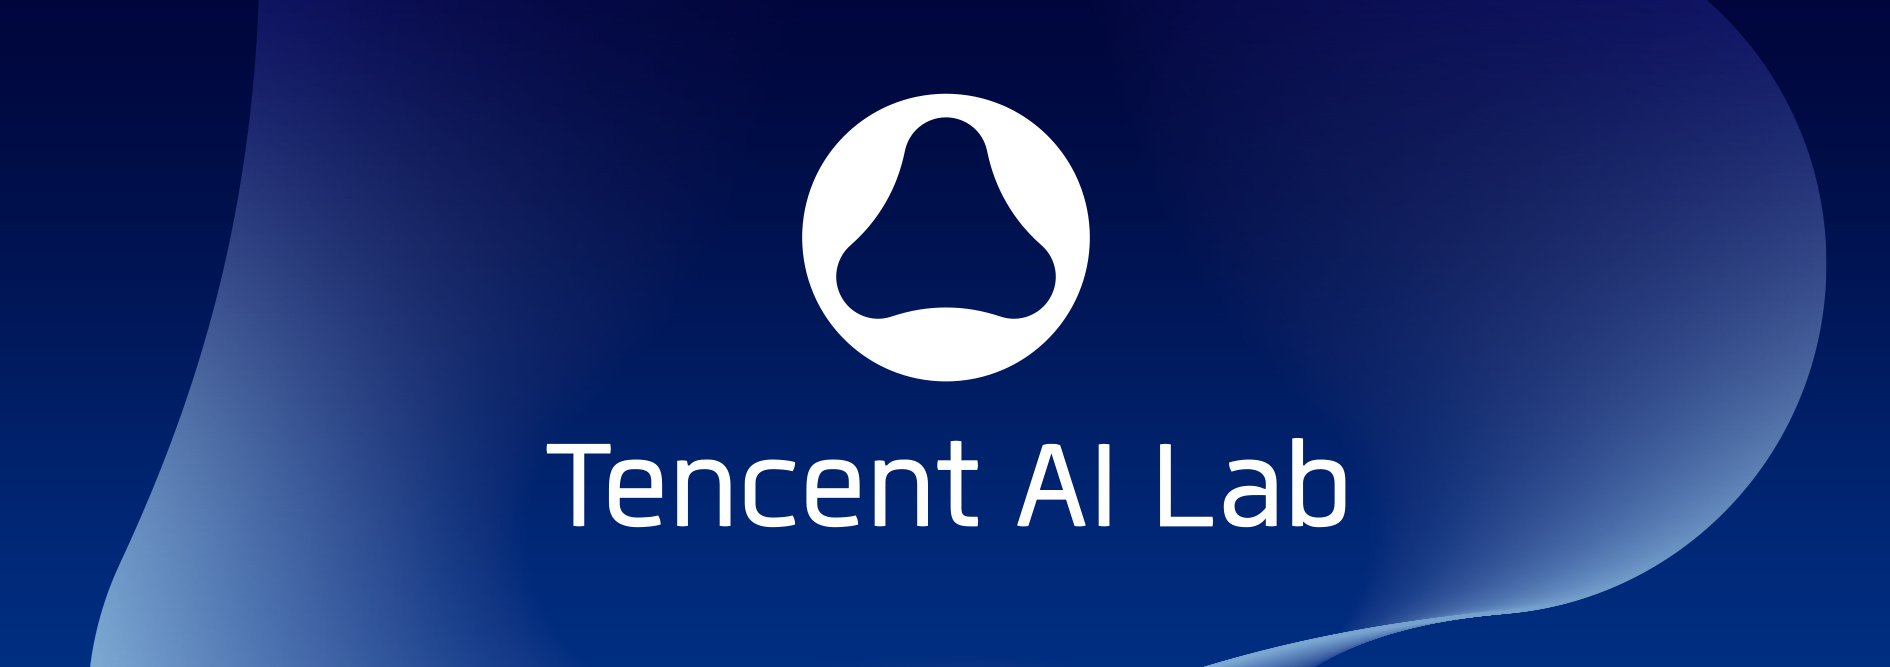 Tencent AI Lab - 品牌形象设计